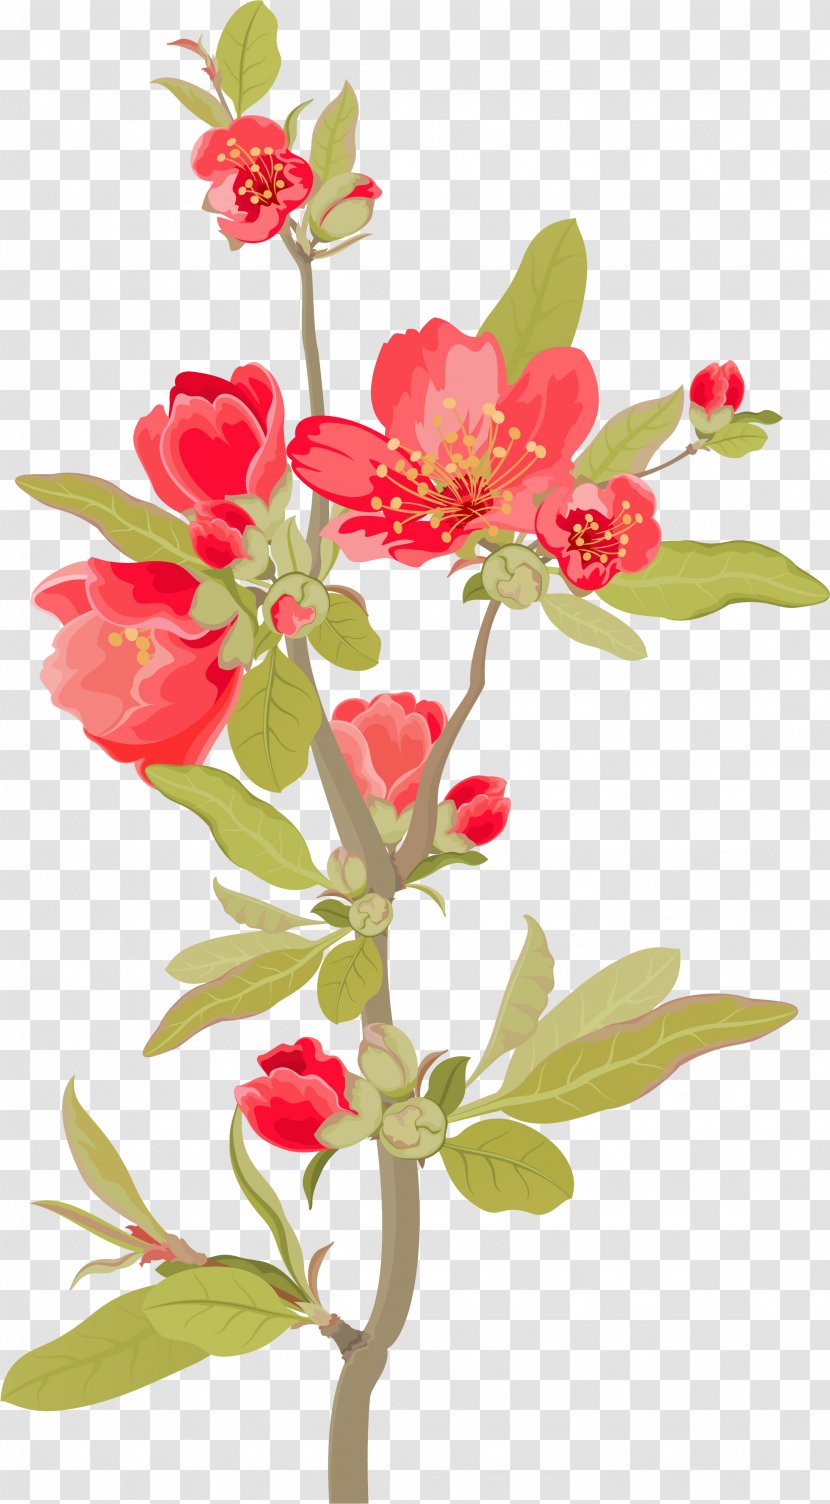 Floral Design Film Poster - Magnolia Flower Branches Transparent PNG